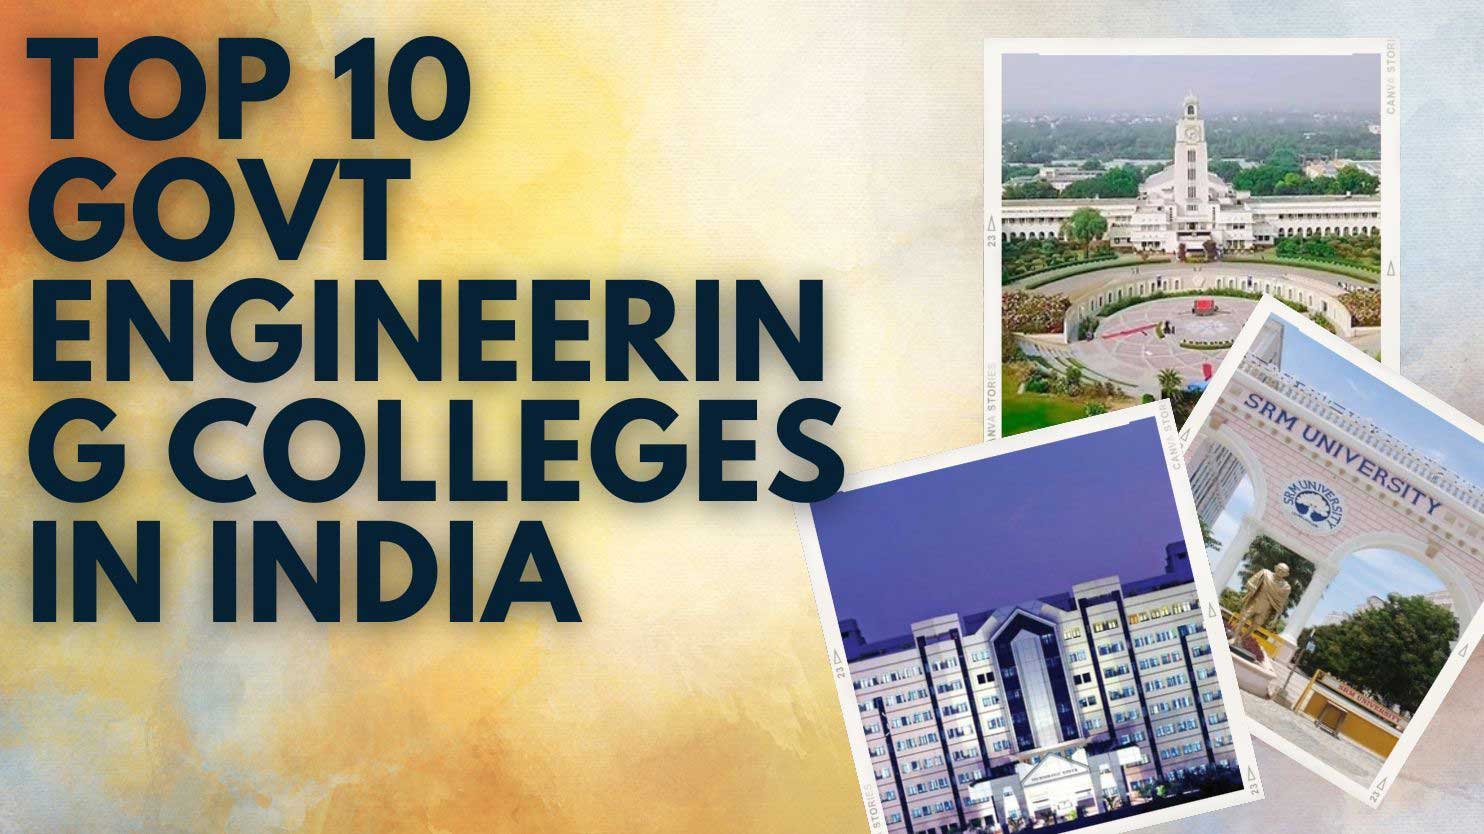 Top 10 govt engineering colleges